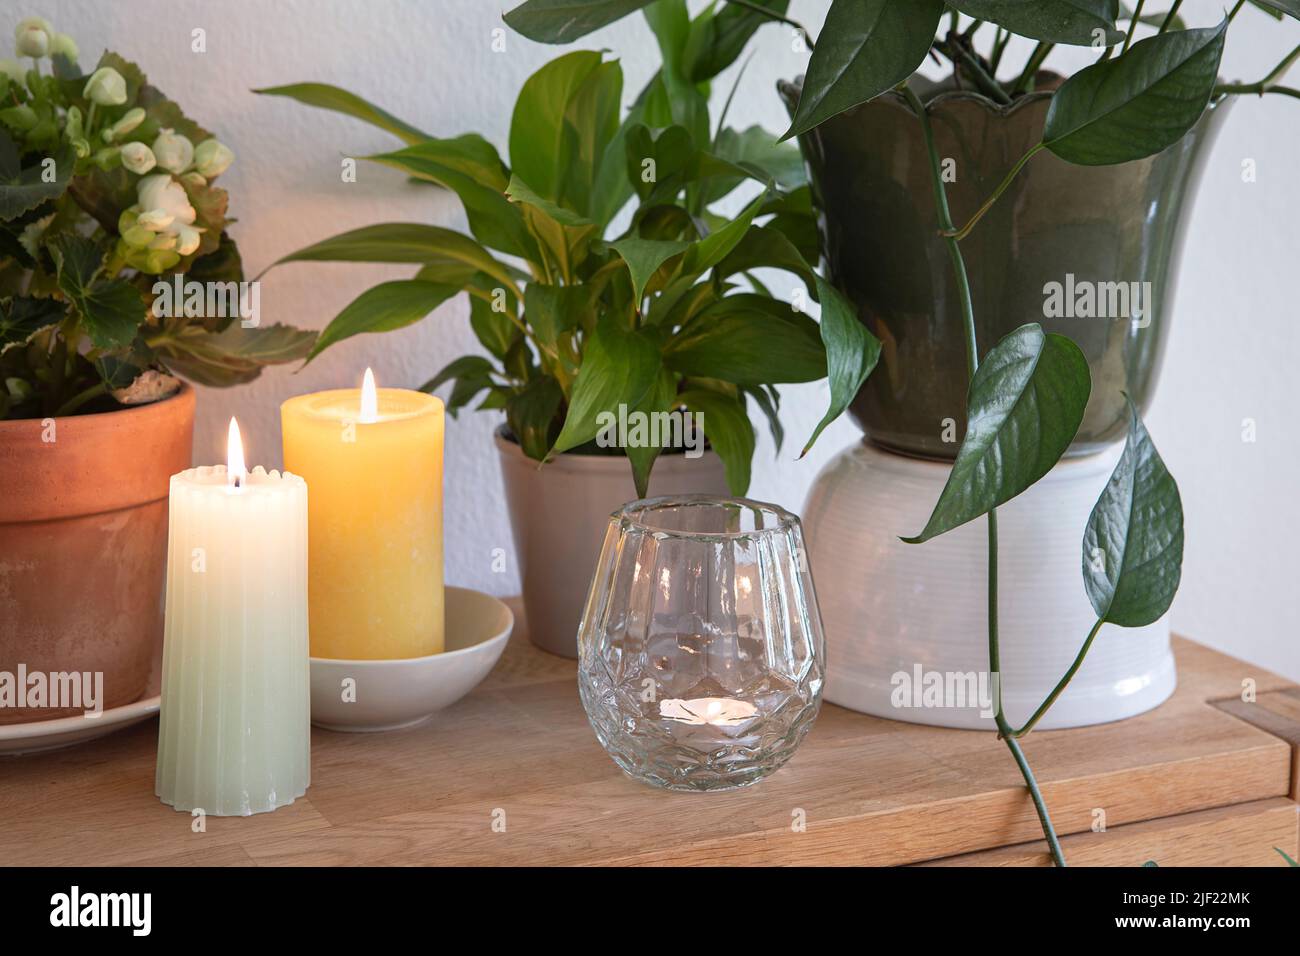 Foglie verdi di piante e candele della casa, accogliente elegante decorazione interna disposizione. Foto Stock